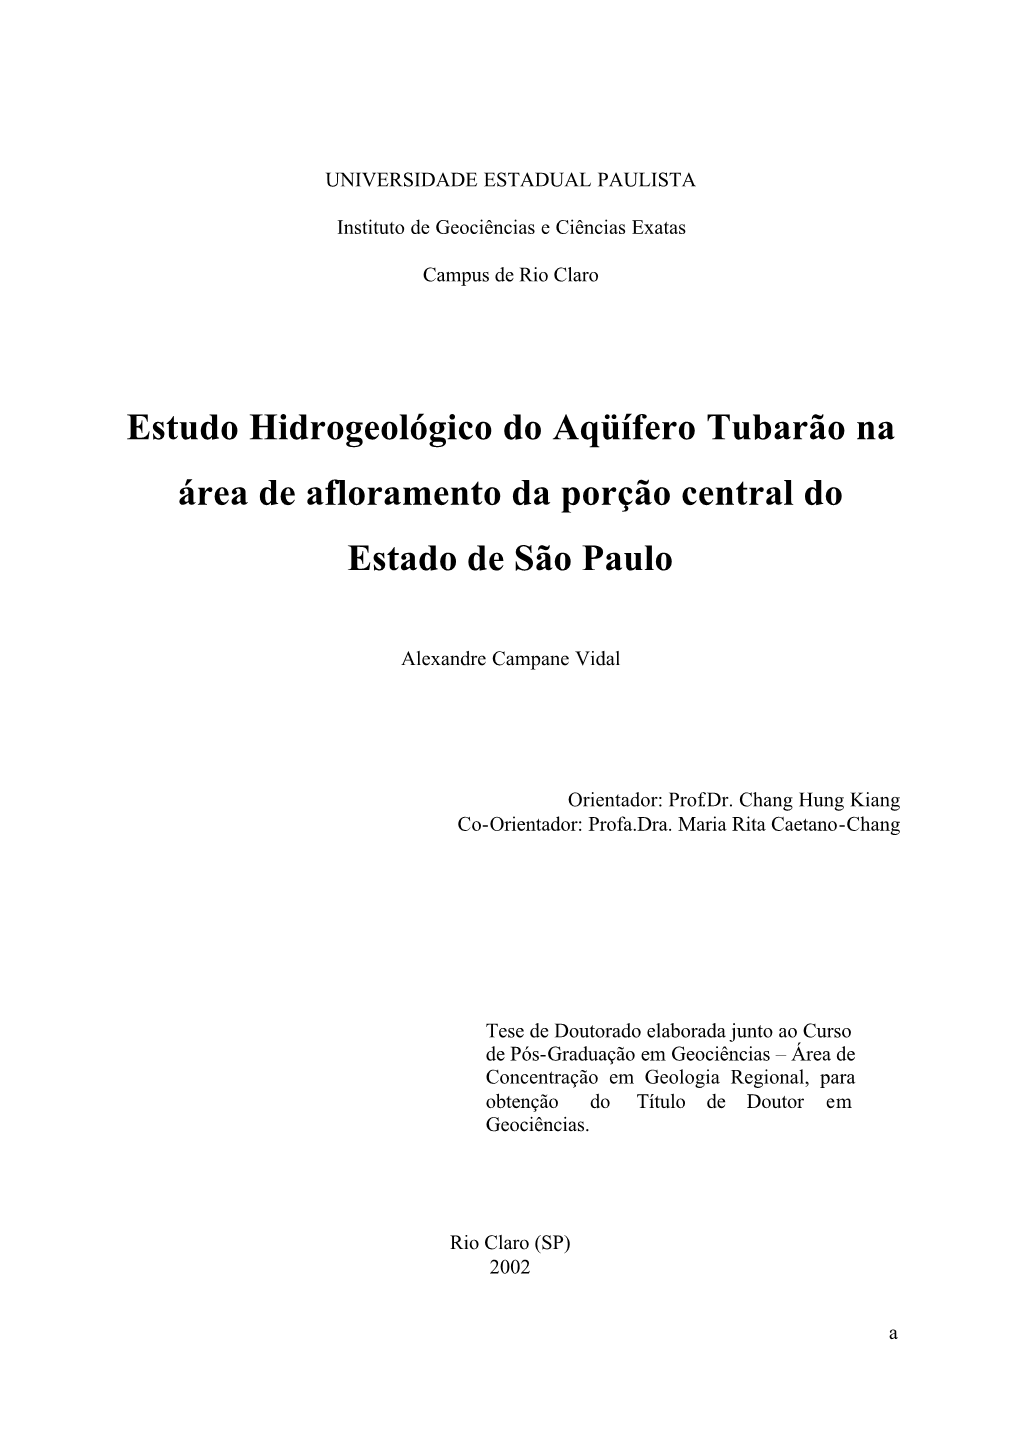 Estudo Hidrogeológico Do Aqüífero Tubarão Na Área De Afloramento Da Porção Central Do Estado De São Paulo